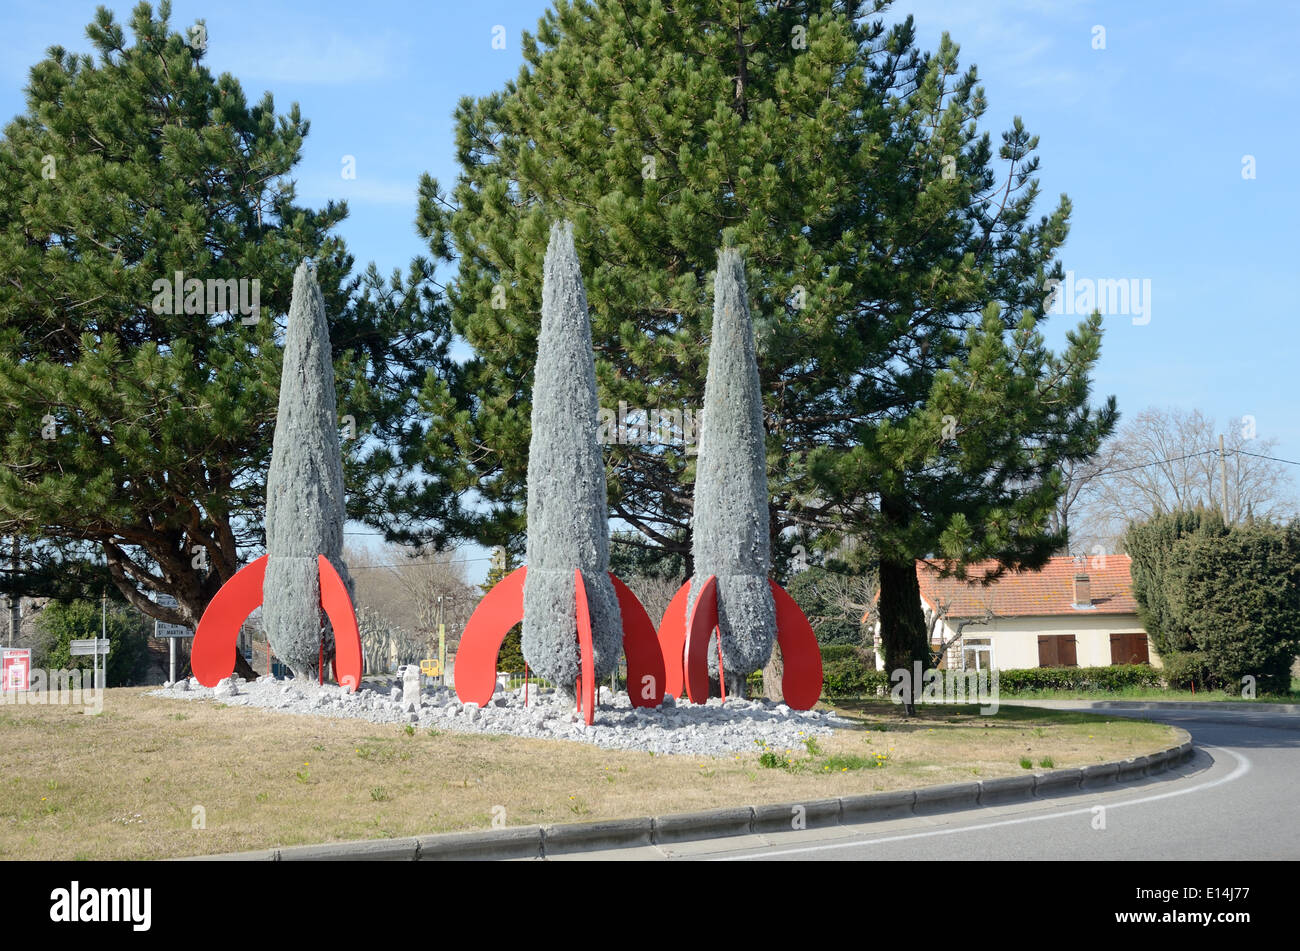 Cipreses o ciprés mediterráneo & Soporte Props semejantes cohetes o misiles en Rotonda Salon de Provence Francia Foto de stock